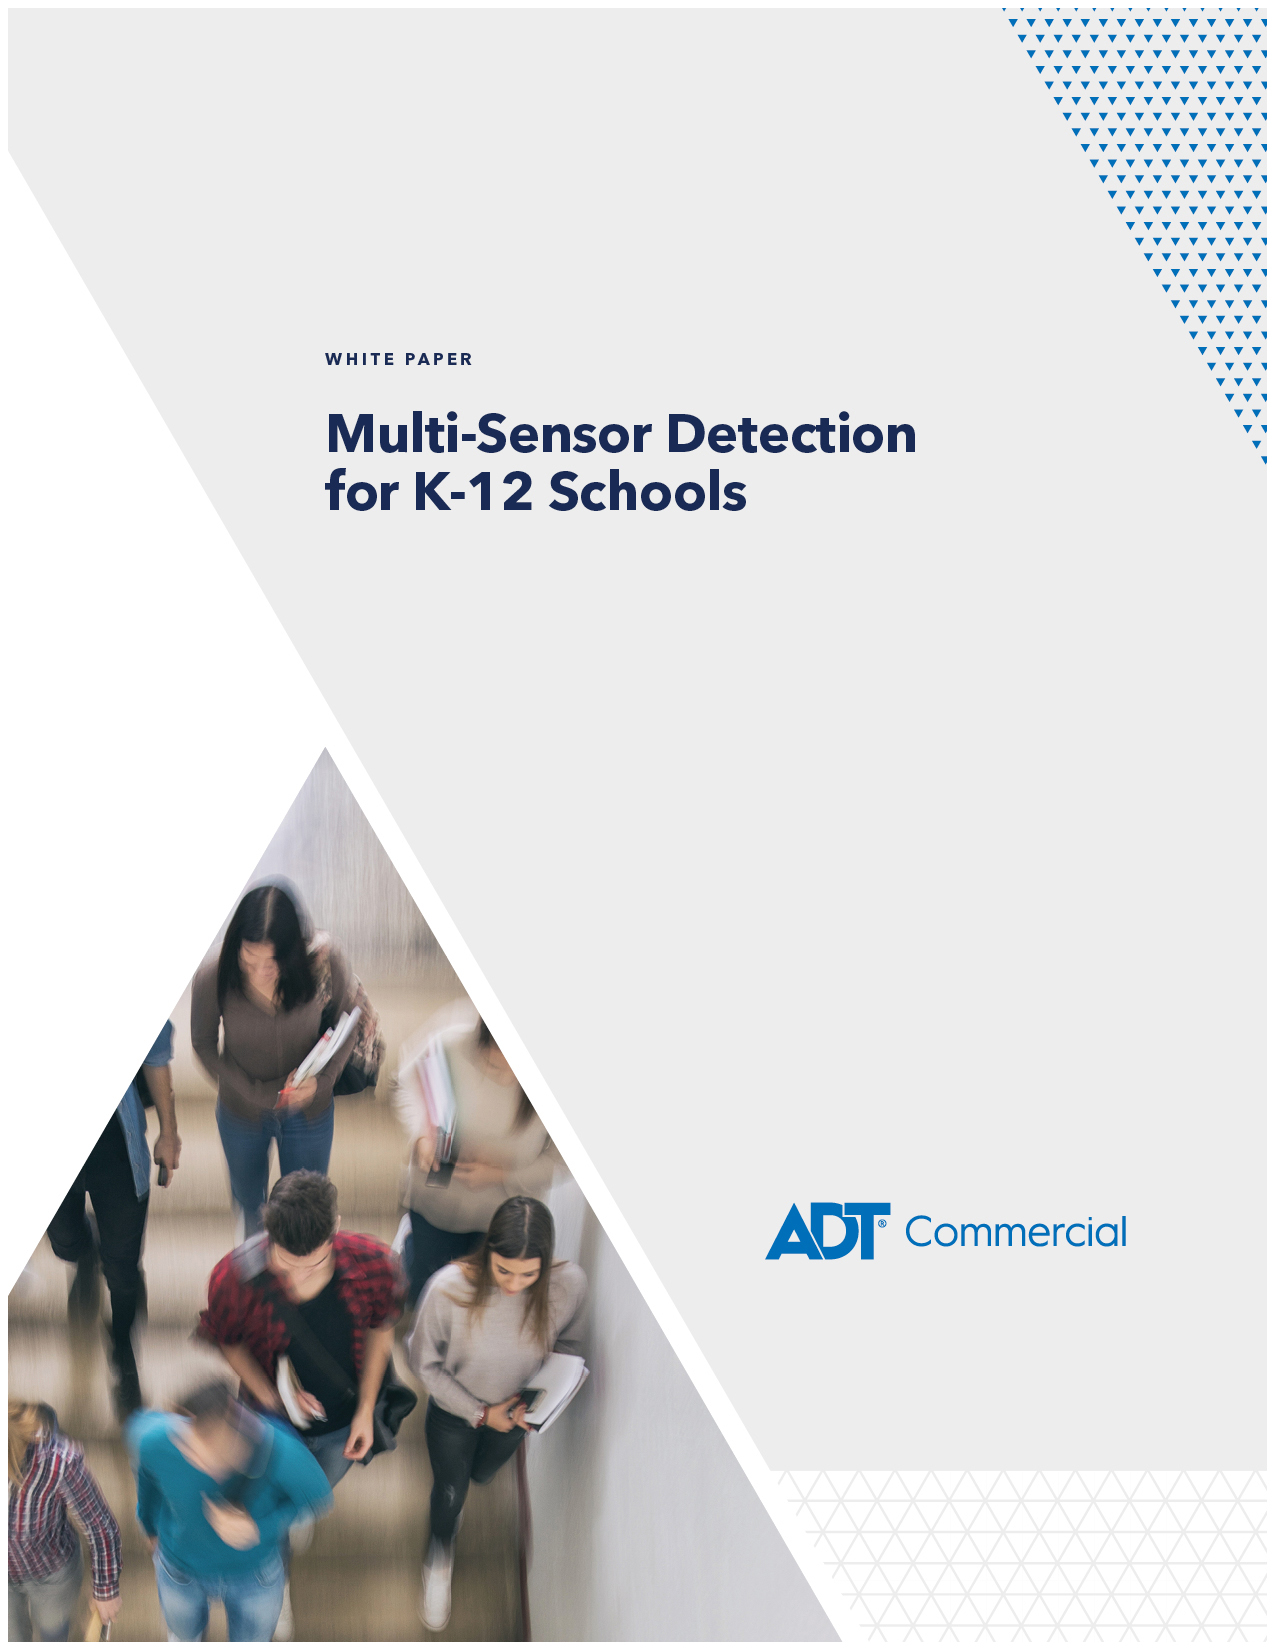 White Paper Cover Image Multi-Sensor Detection for K-12 Schools